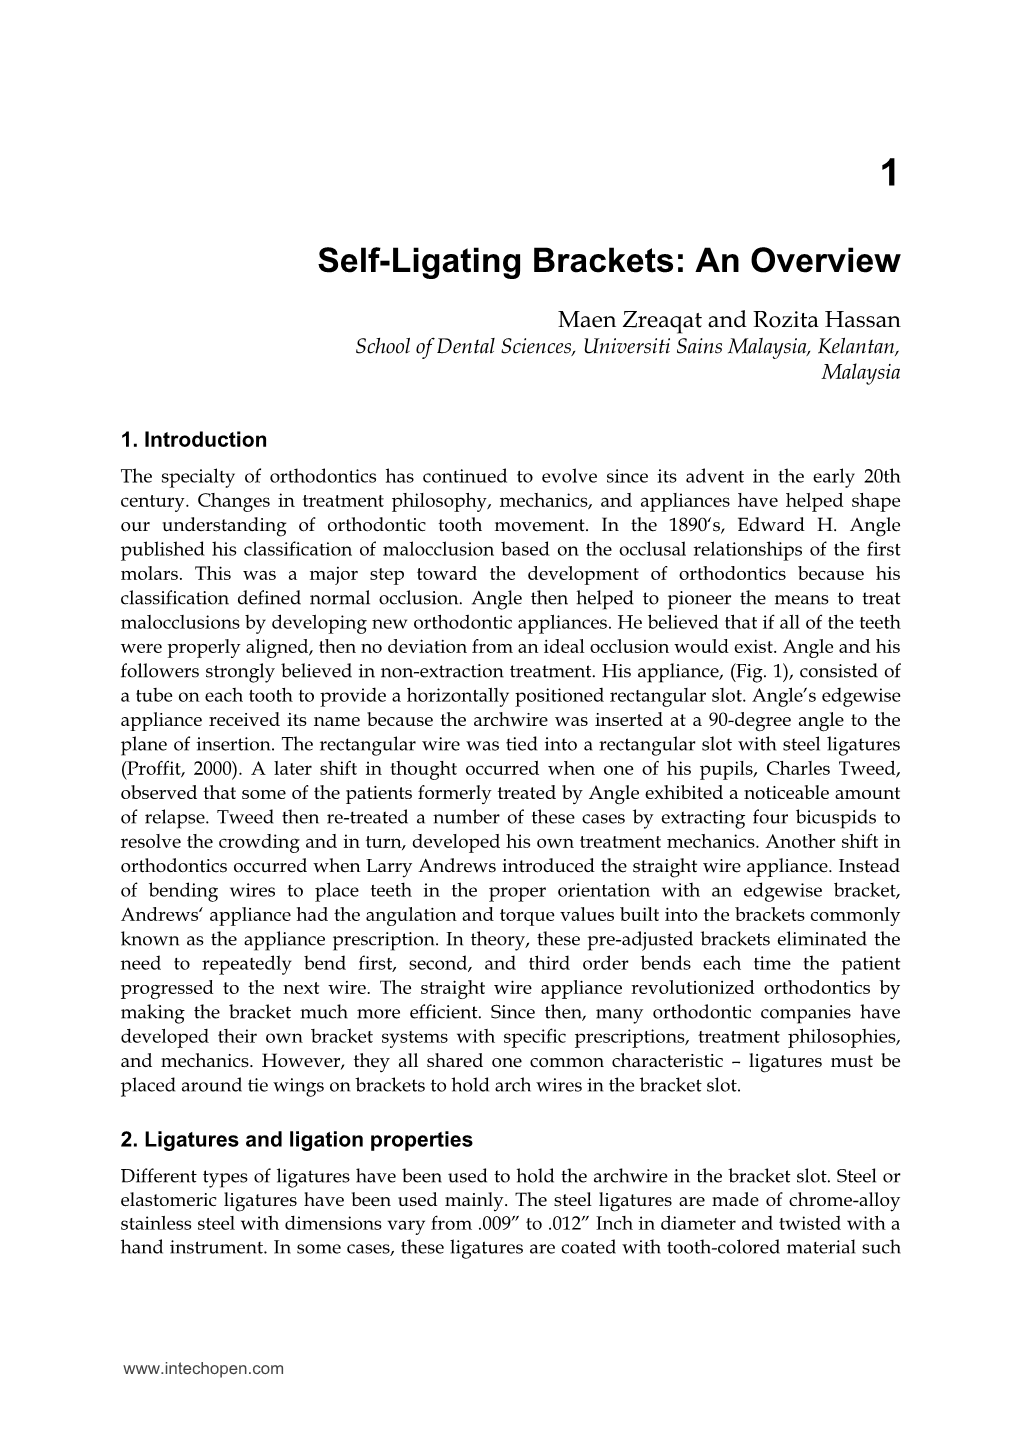 Self-Ligating Brackets: an Overview